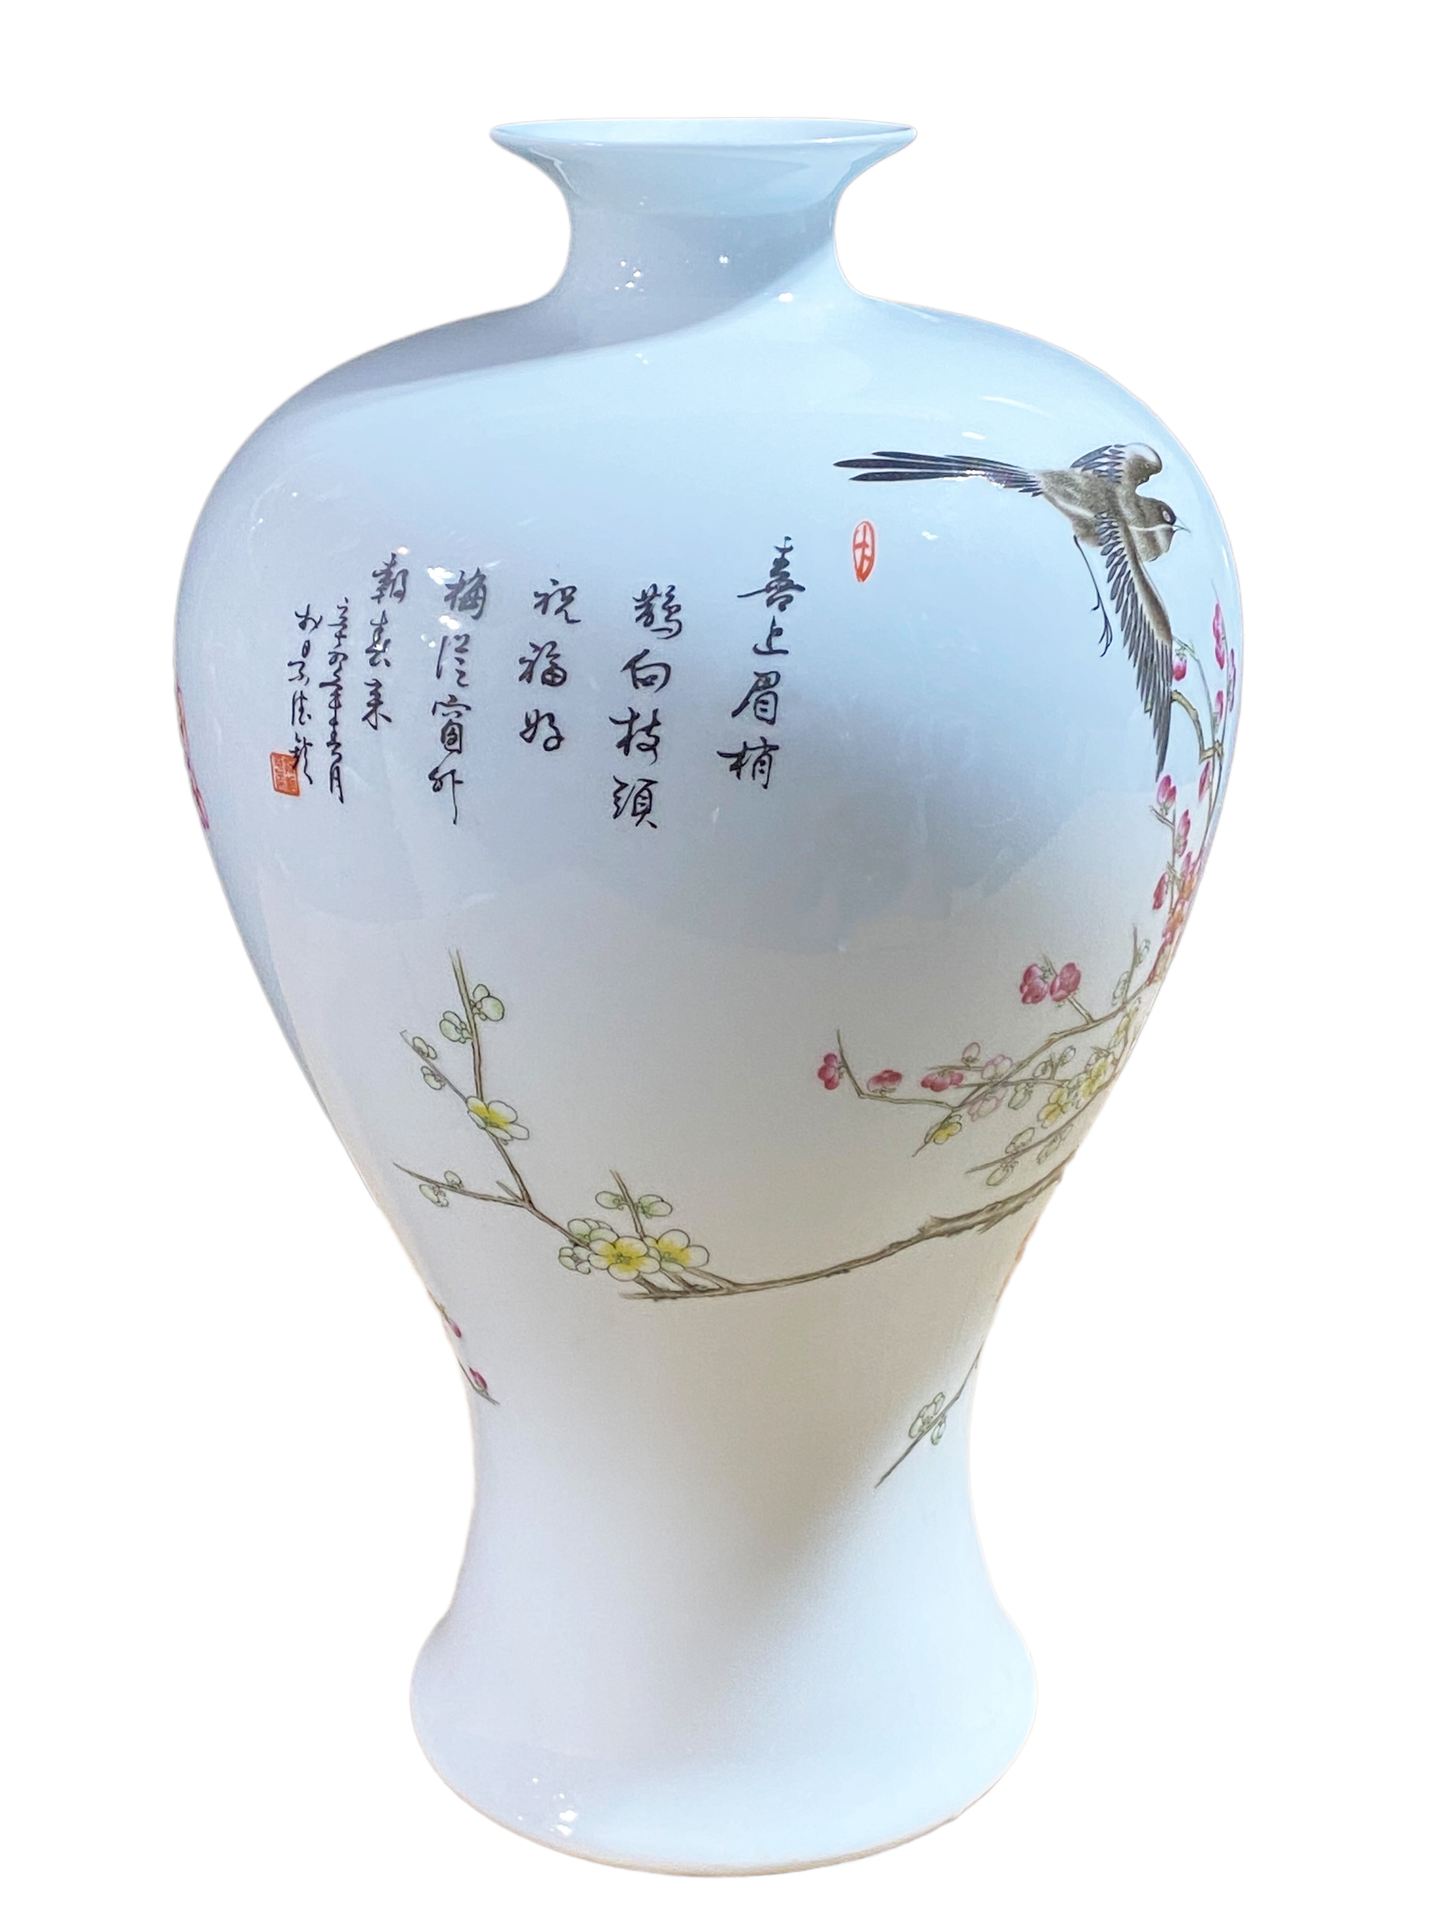 #3142 Chinoiserie Porcelain Egg Shell Vase 13.25" H